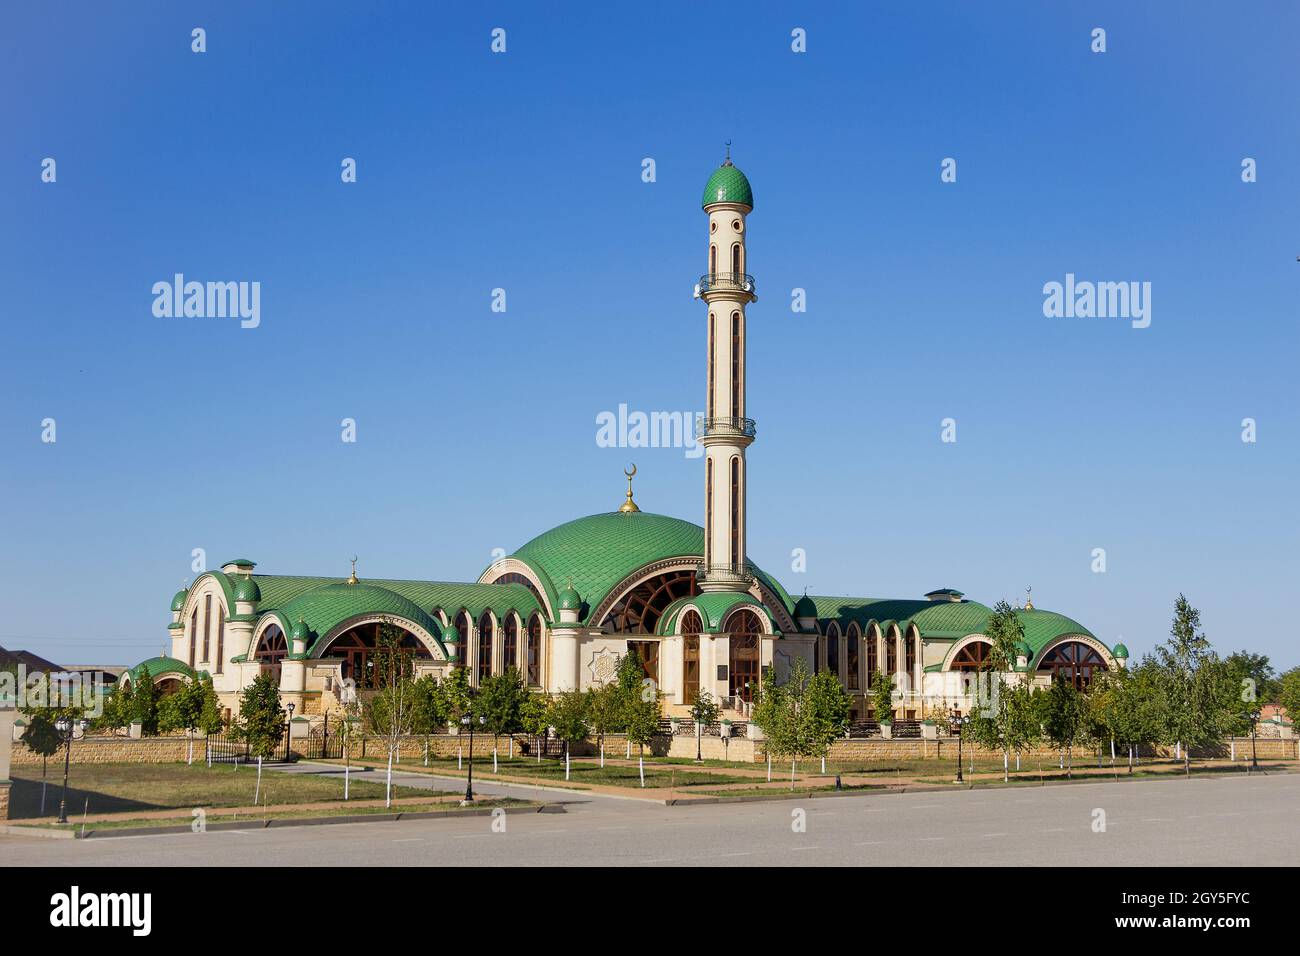 Moderne muslimische Moschee in der Tschetschenischen Republik, in der Nähe der Autobahn Machatschkala-Grosny. Hintergrund - blauer Himmel, Kopierbereich Stockfoto